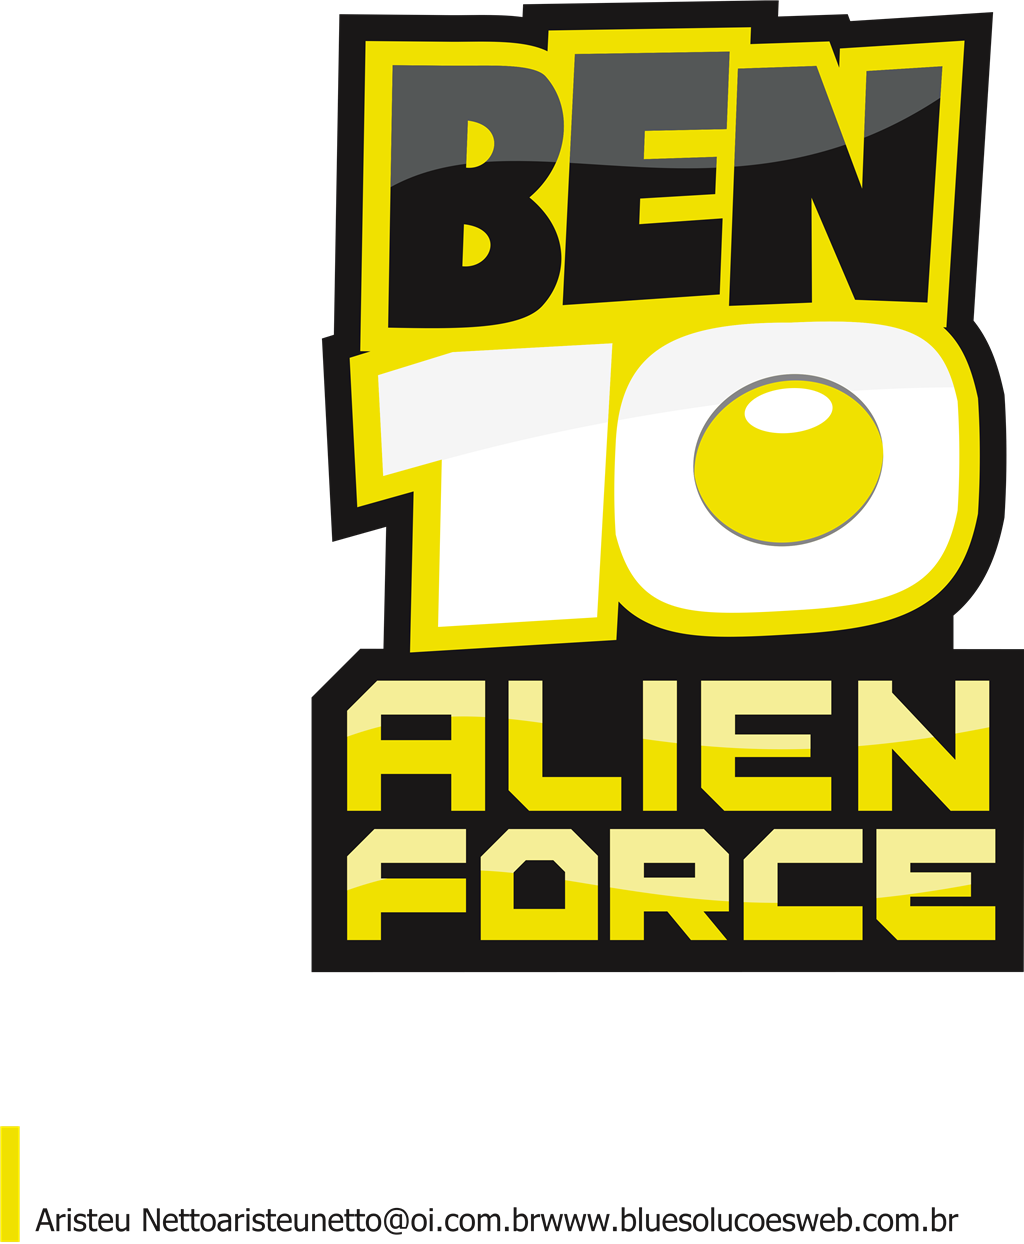 Ben 10 Alien Force Game logotype, transparent .png, medium, large